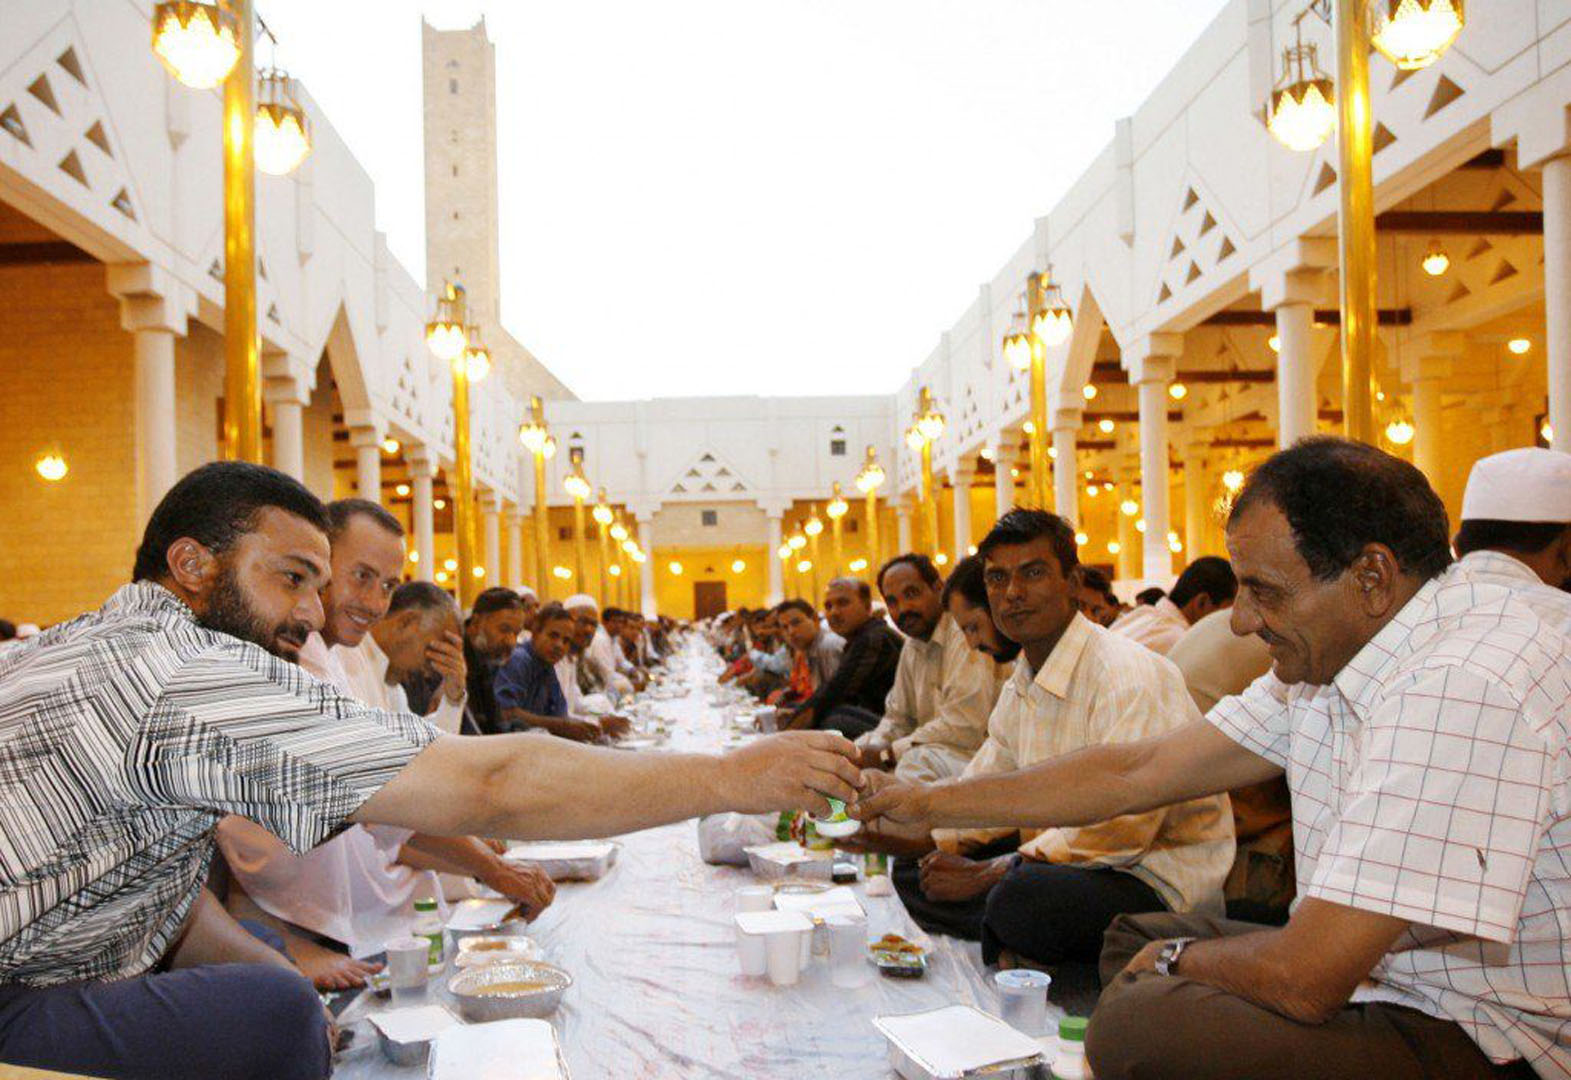 Hoş geldin ya şehri ramazan mesajları 2022 | Ramazan ayı tebrik mesajları, sözleri | En güzel, kısa, dualı, ayetli, yeni Ramazan mesajları